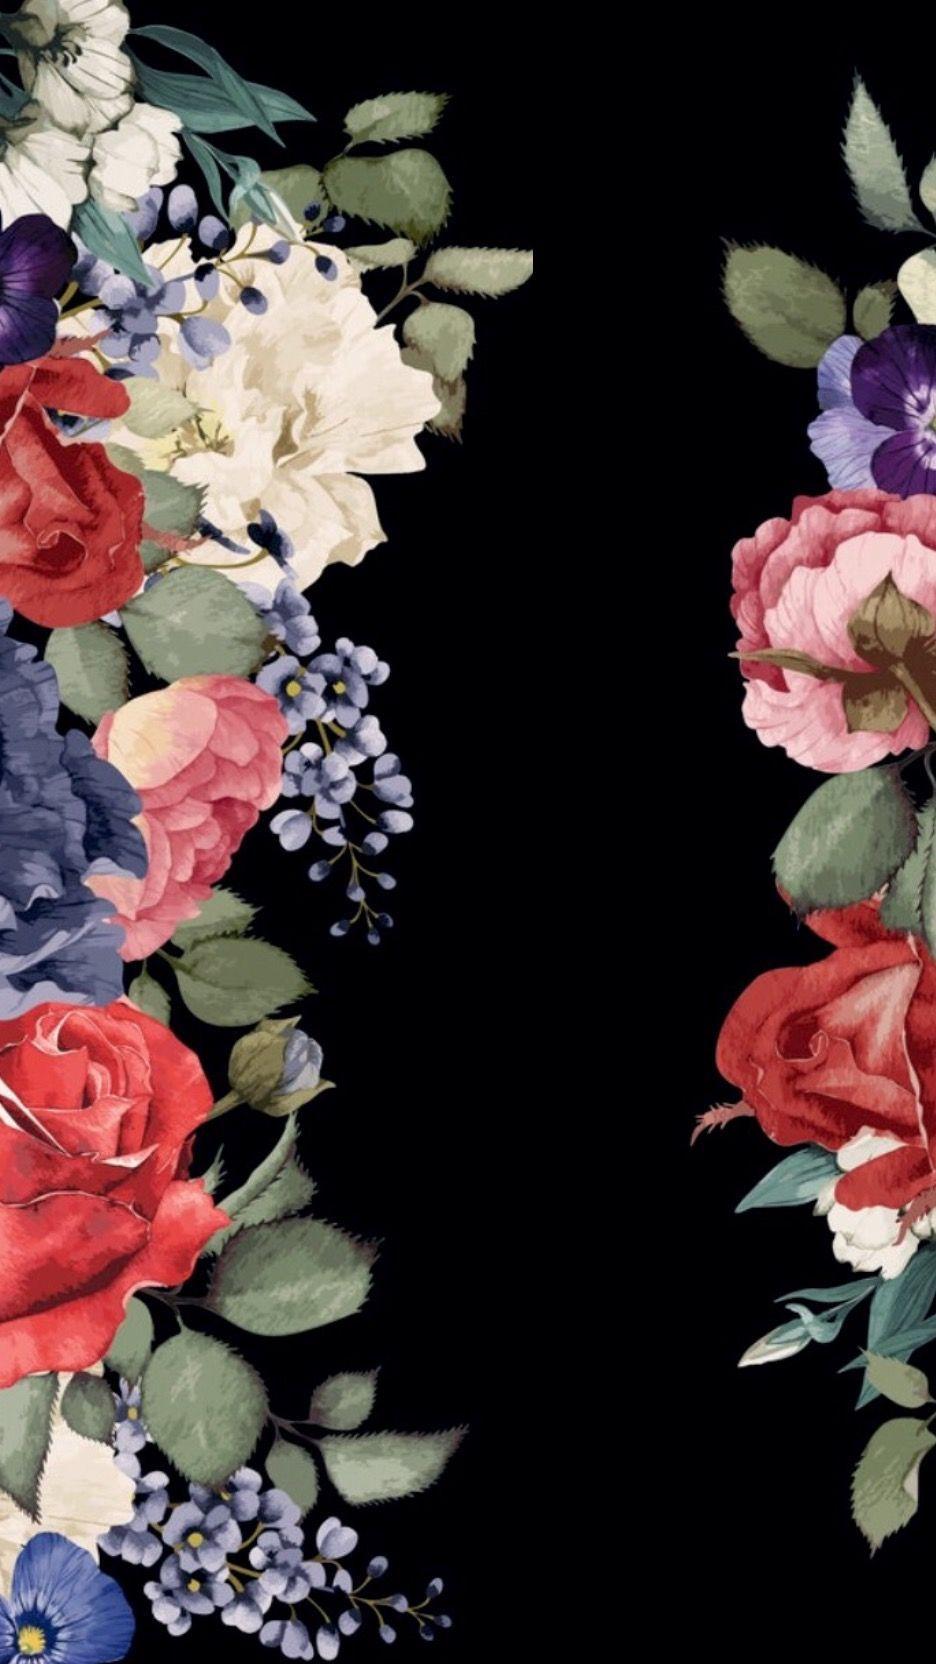 Download Gambar Wallpaper Black Background Floral terbaru 2020